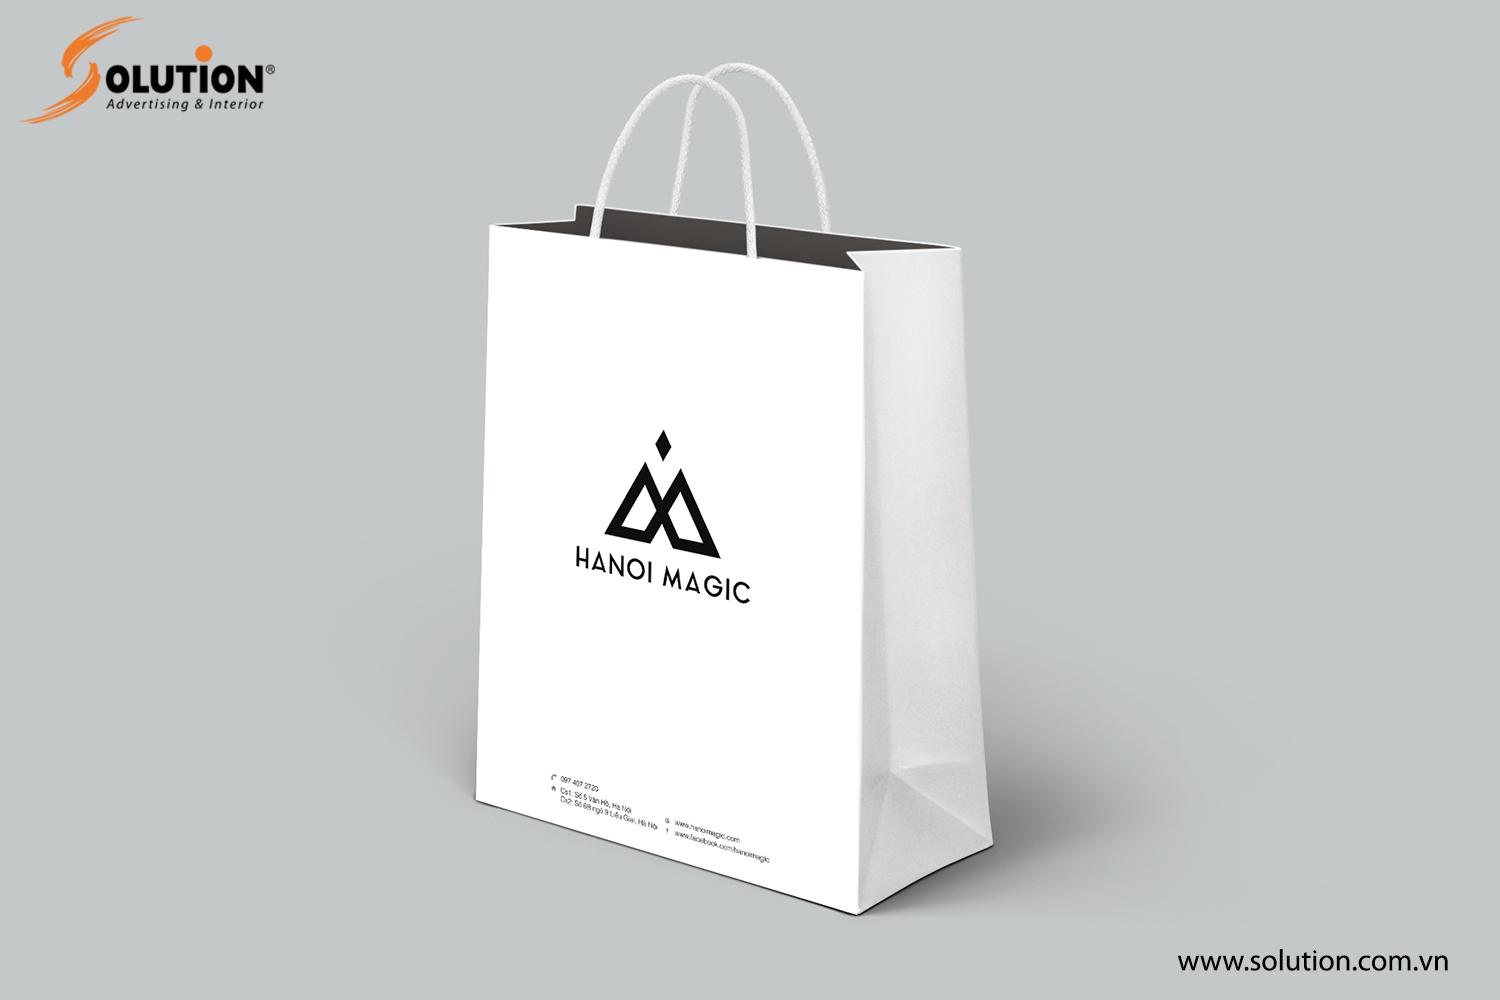 Mẫu thiết kế túi giấy trong bộ nhận diện thương hiệu Hanoi Magic